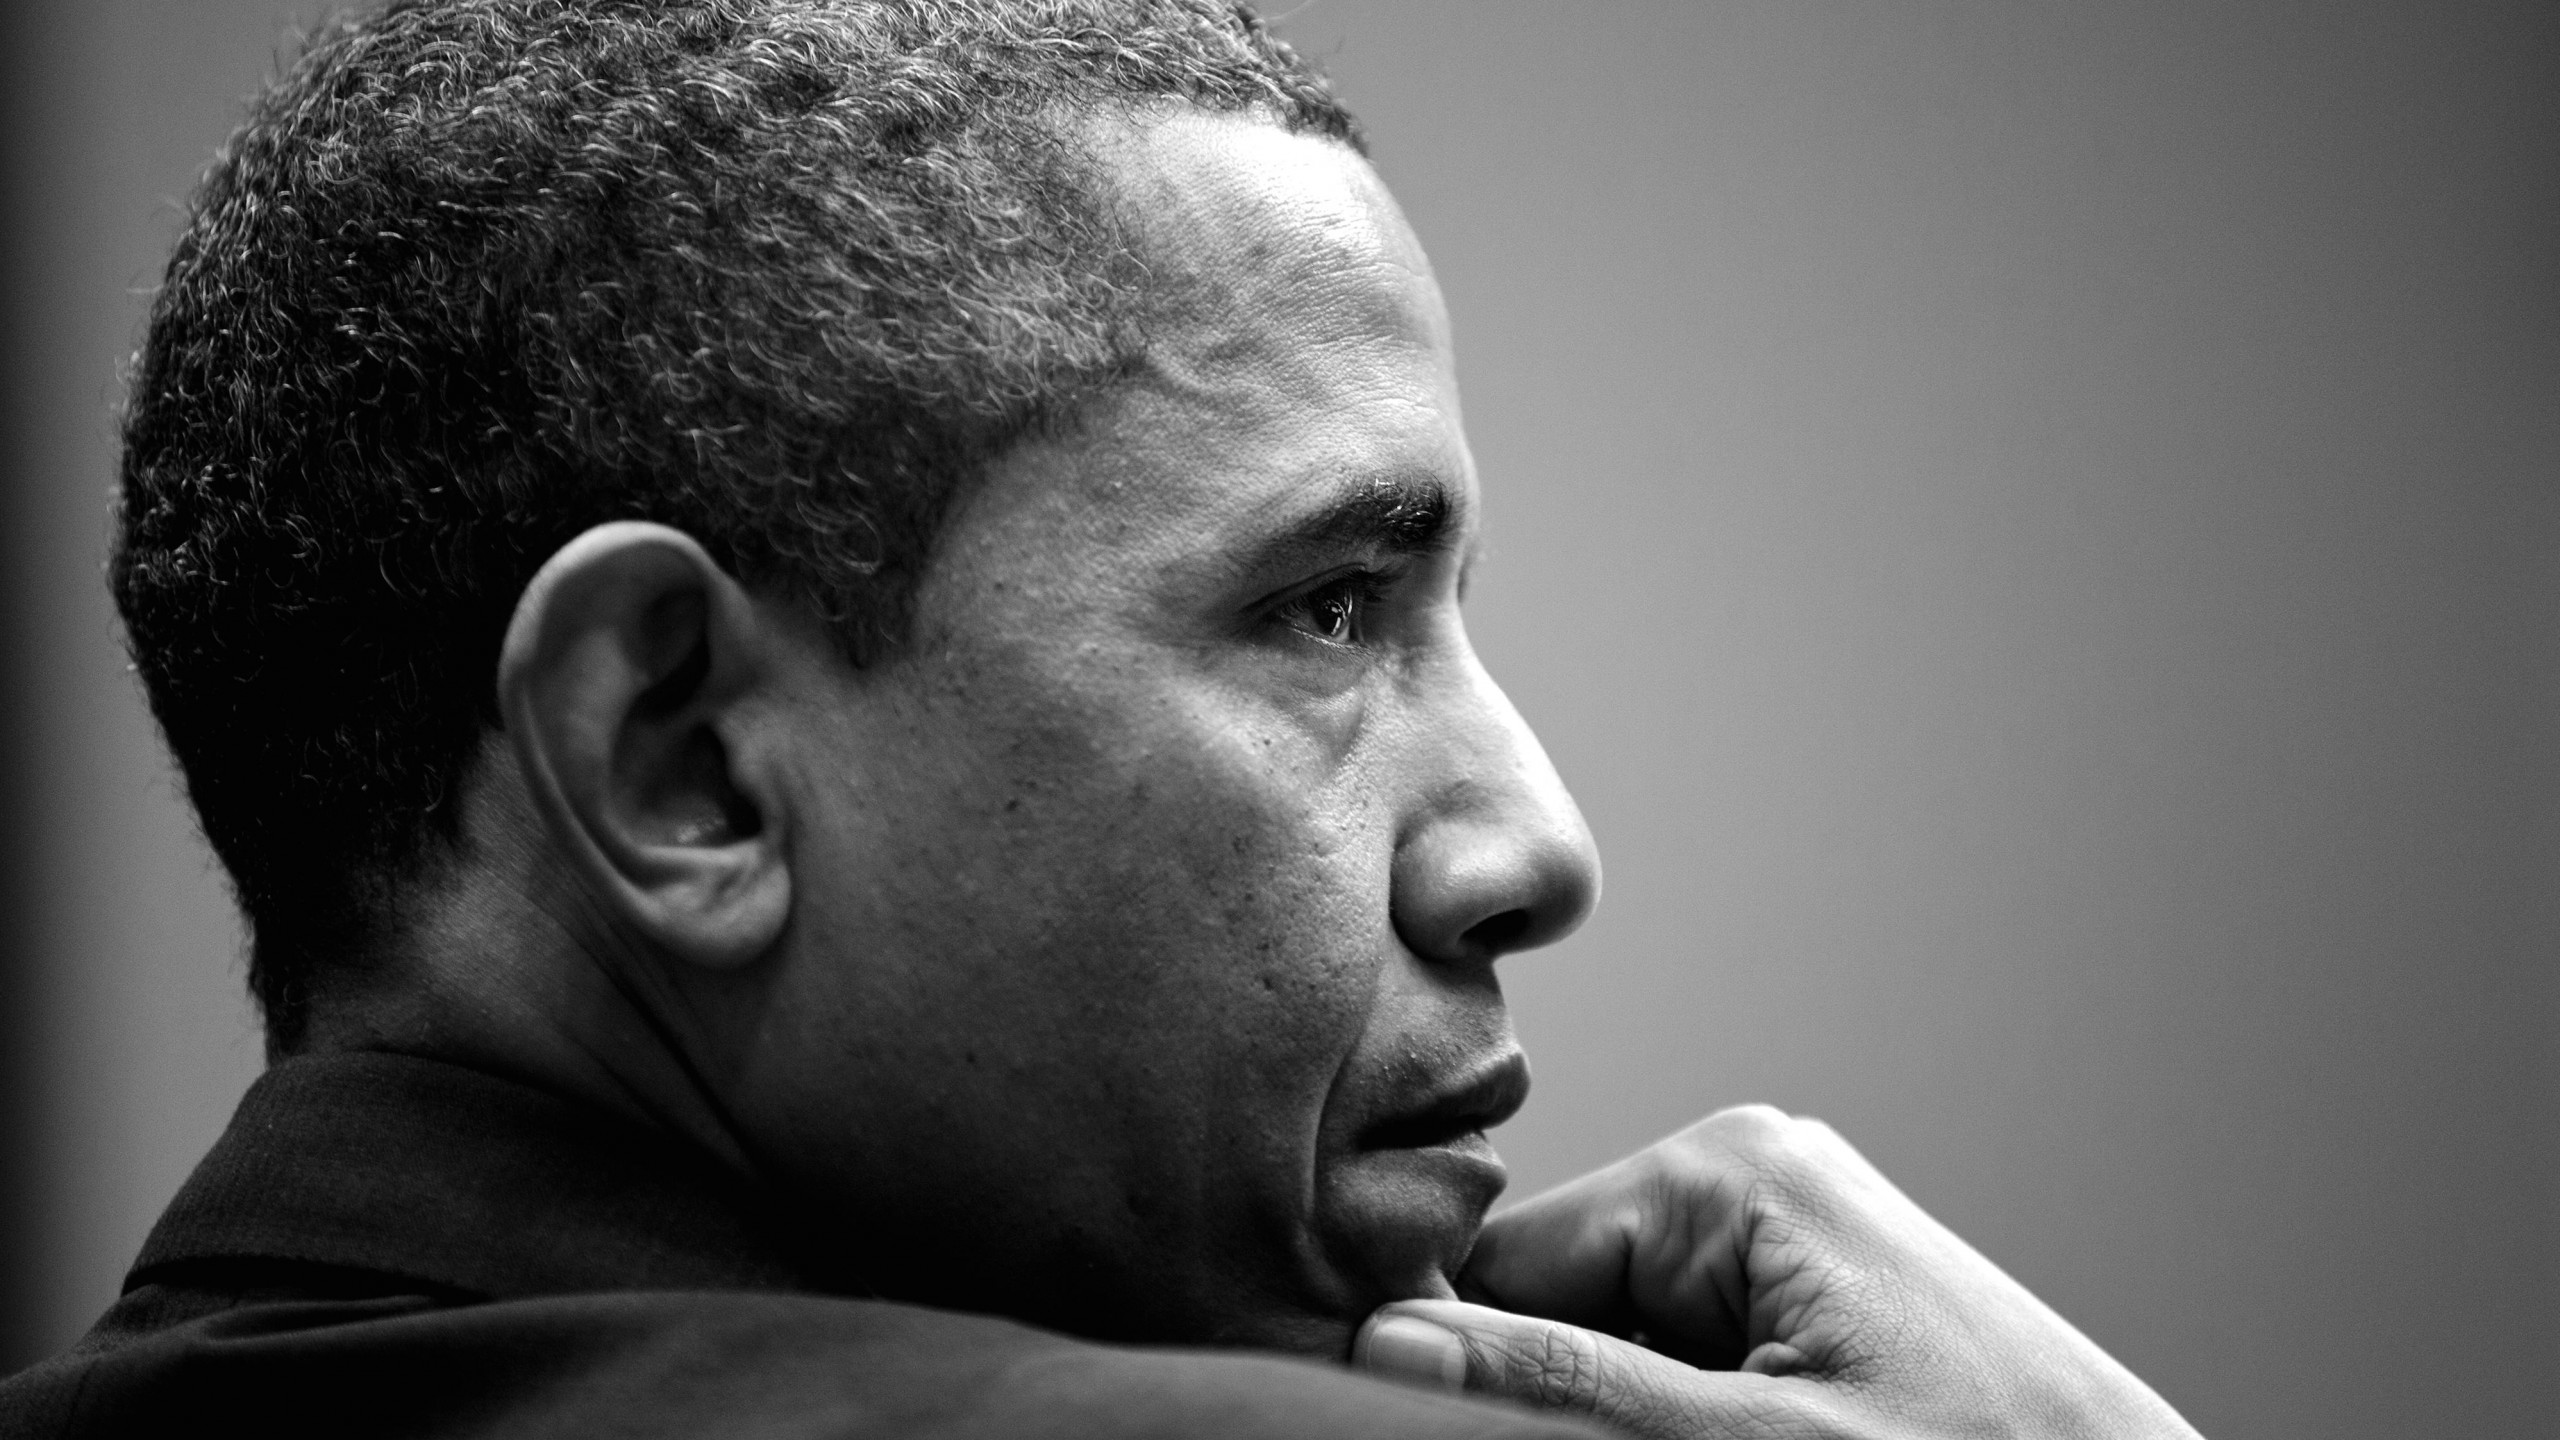 Barack Obama in Black & White Wallpaper for Social Media YouTube Channel Art